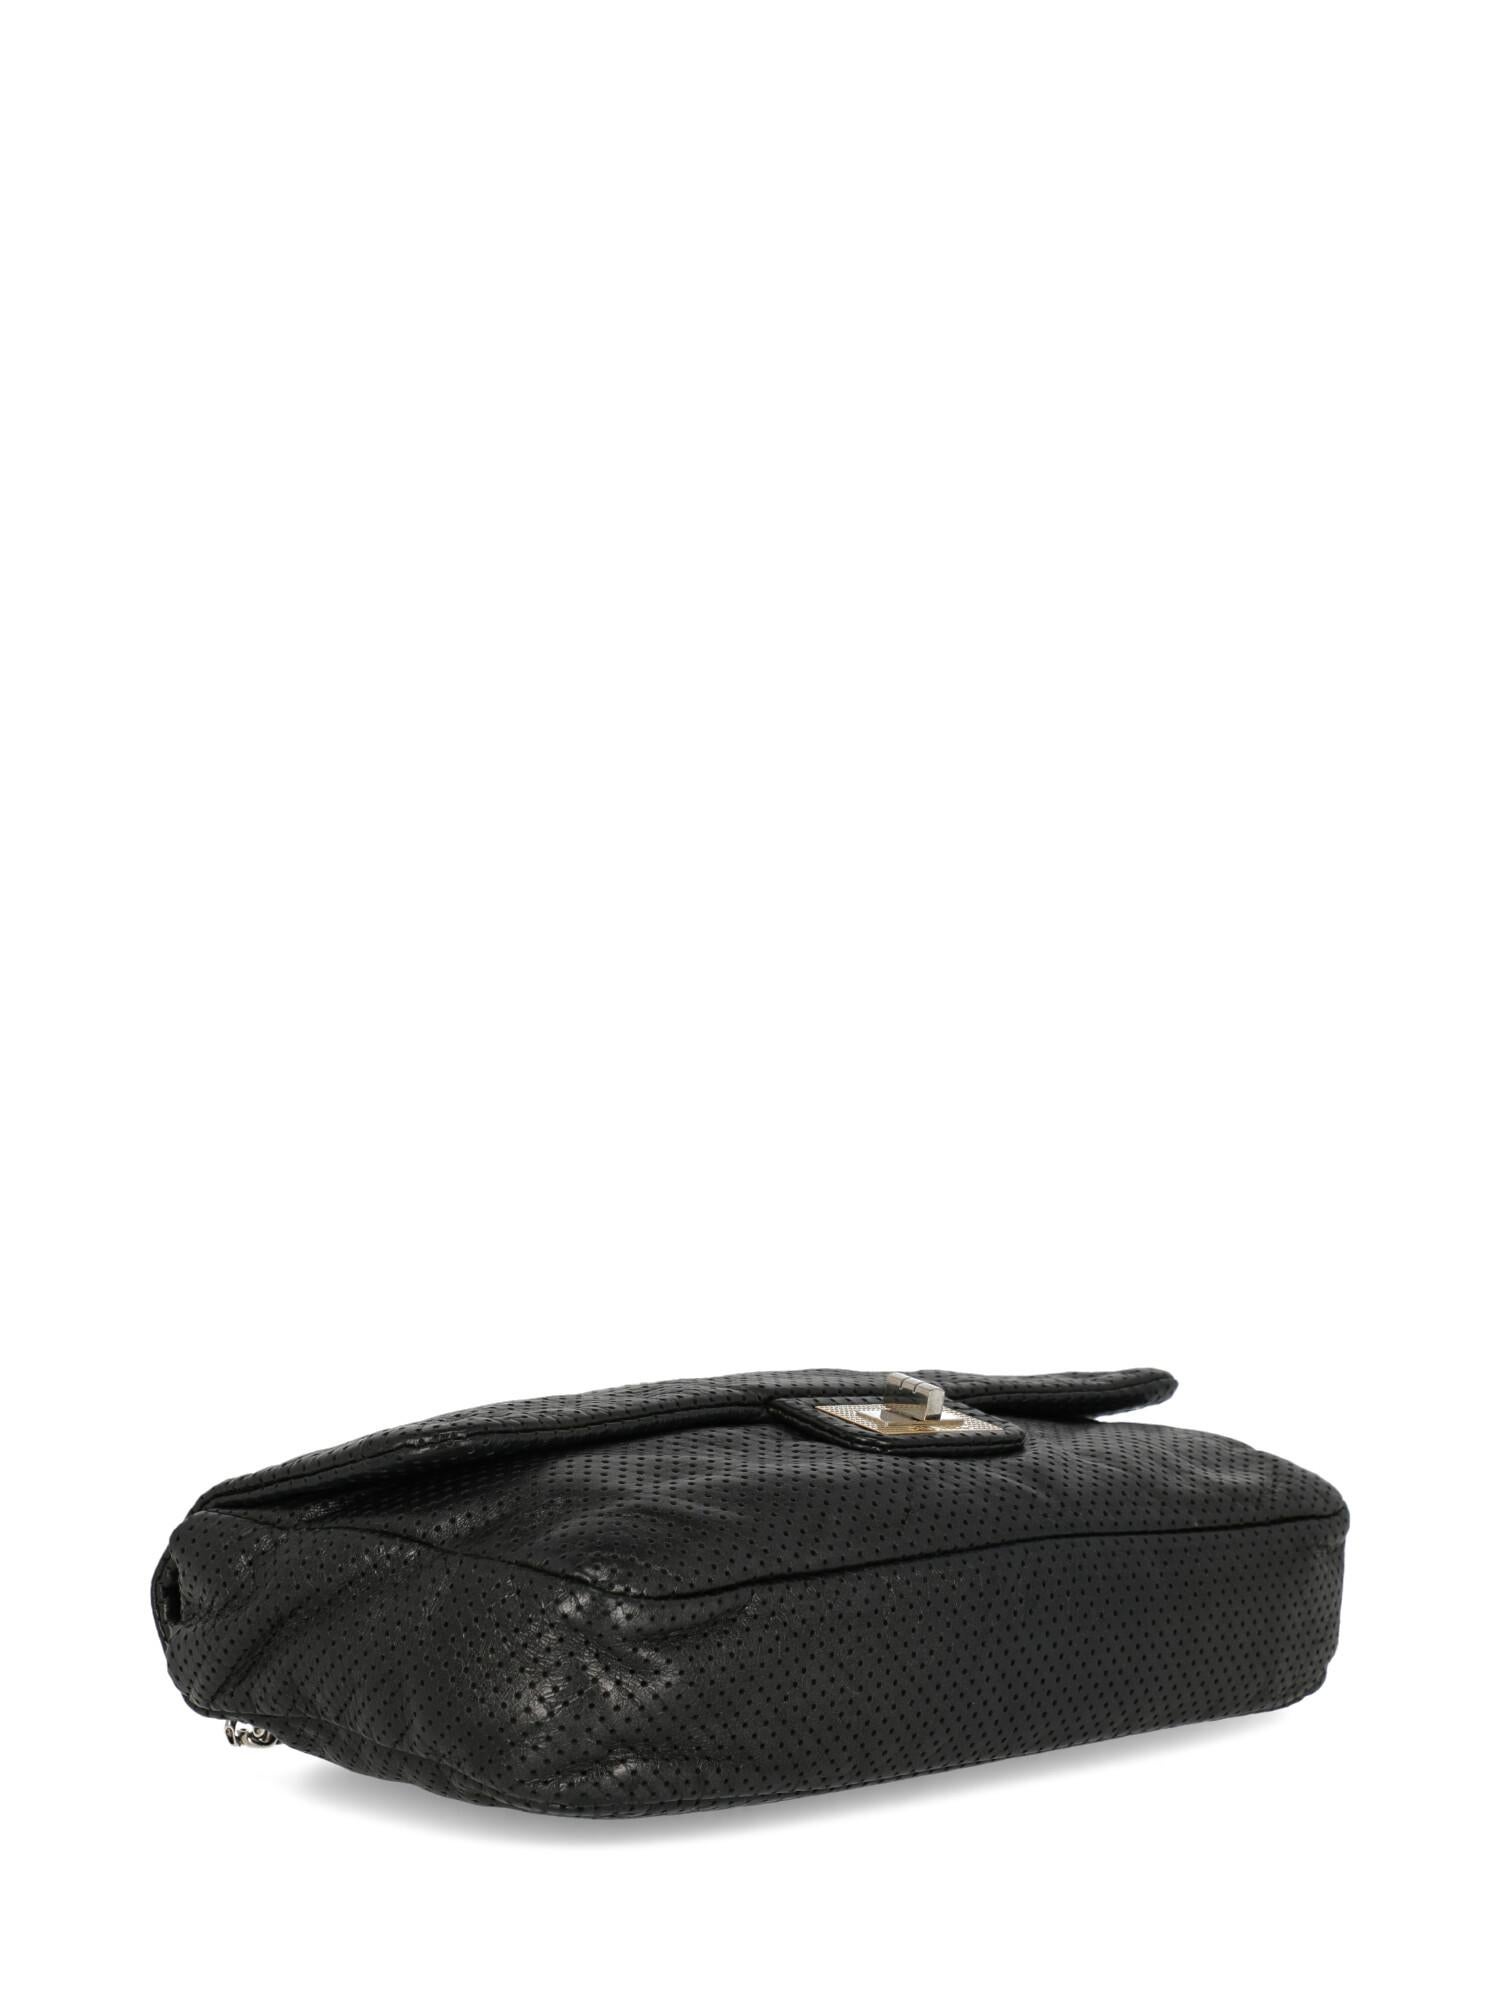 Chanel Women's Shoulder Bag Black Leather For Sale 2